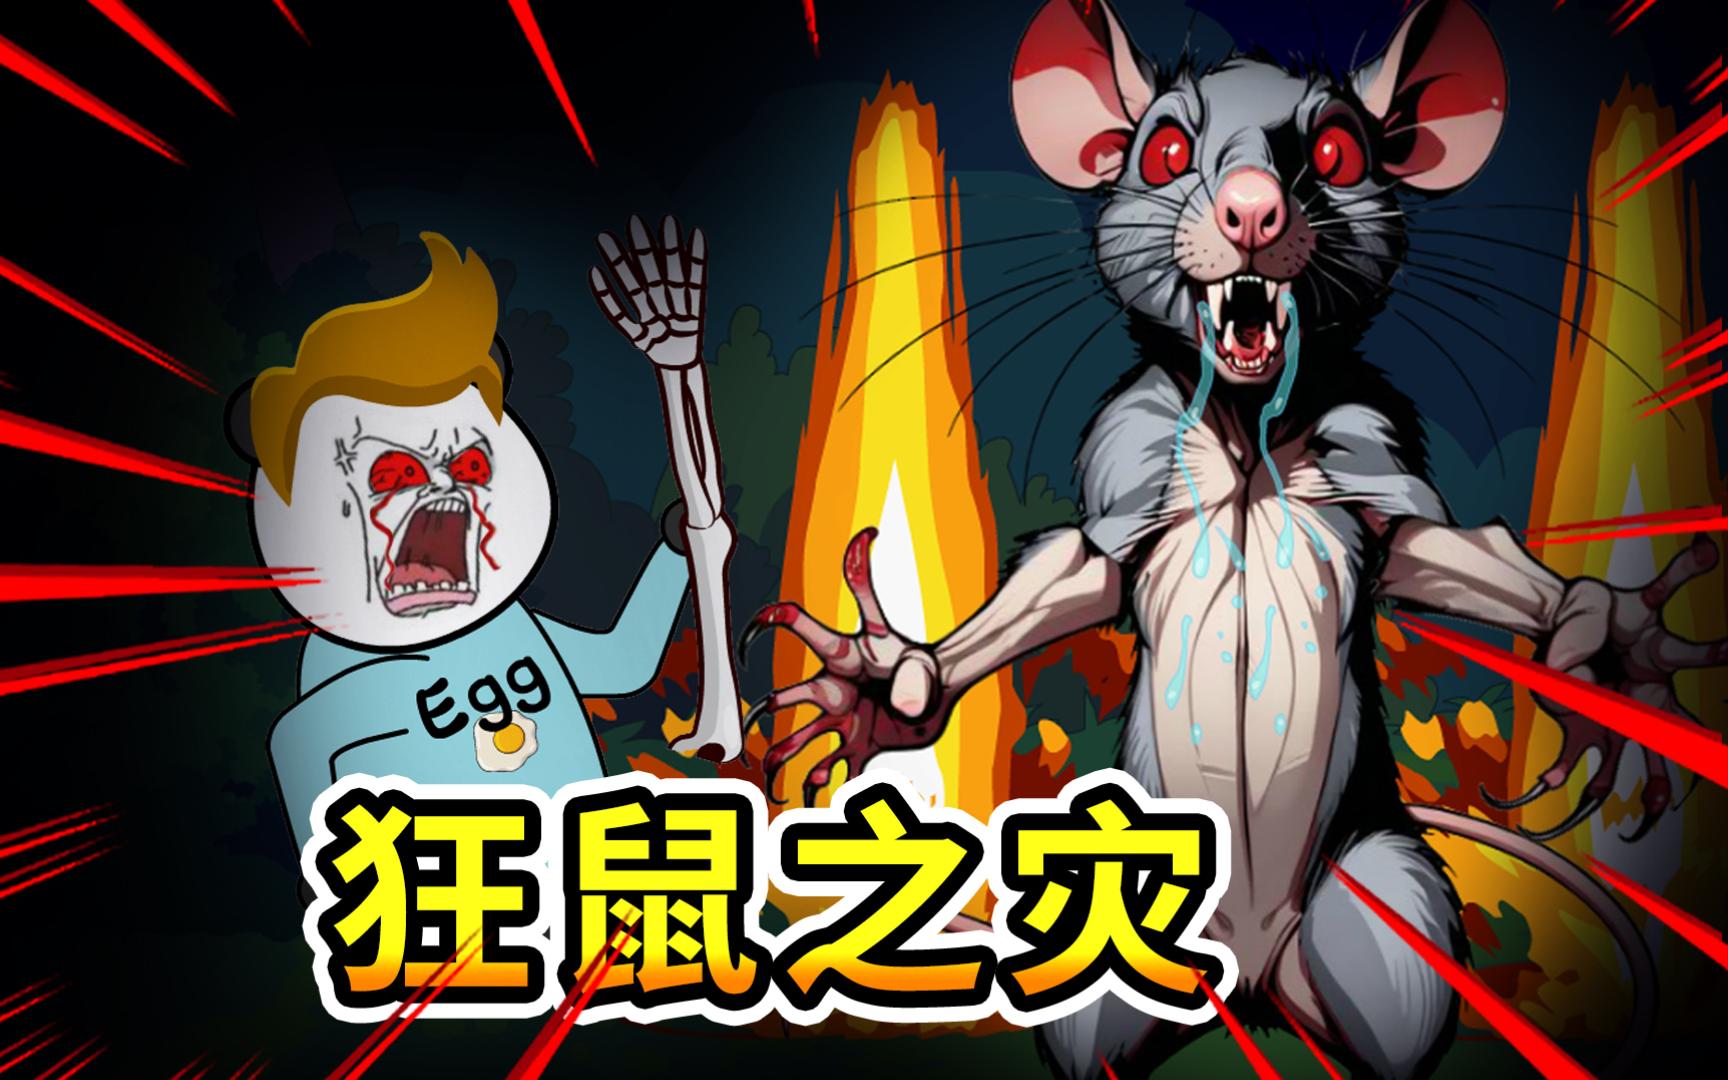 【沙雕恐怖动画】万妖屠村27:变异老鼠引发的灾难